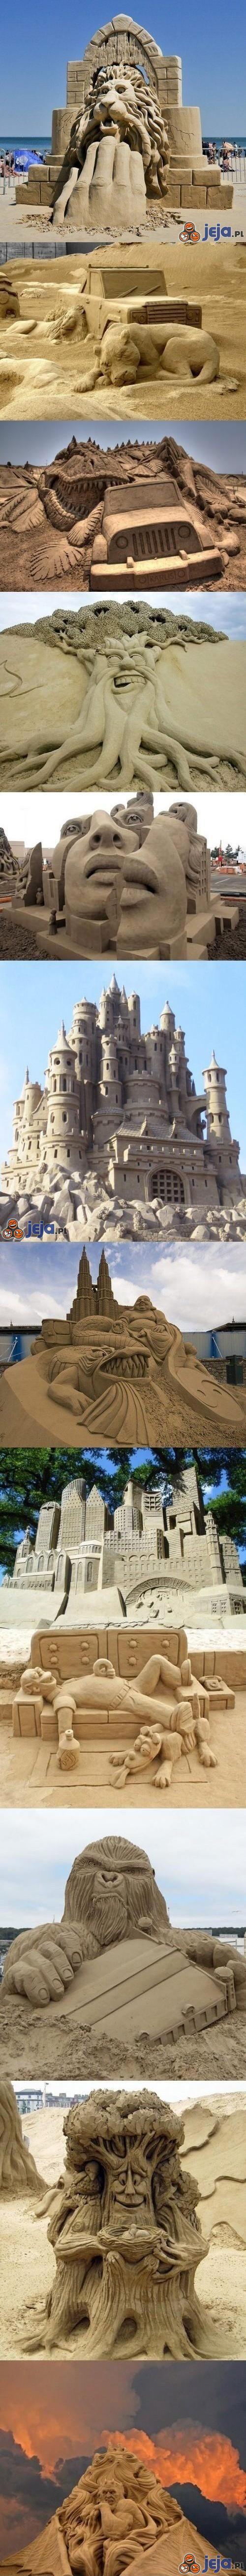 Niesamowite piaskowe rzeźby